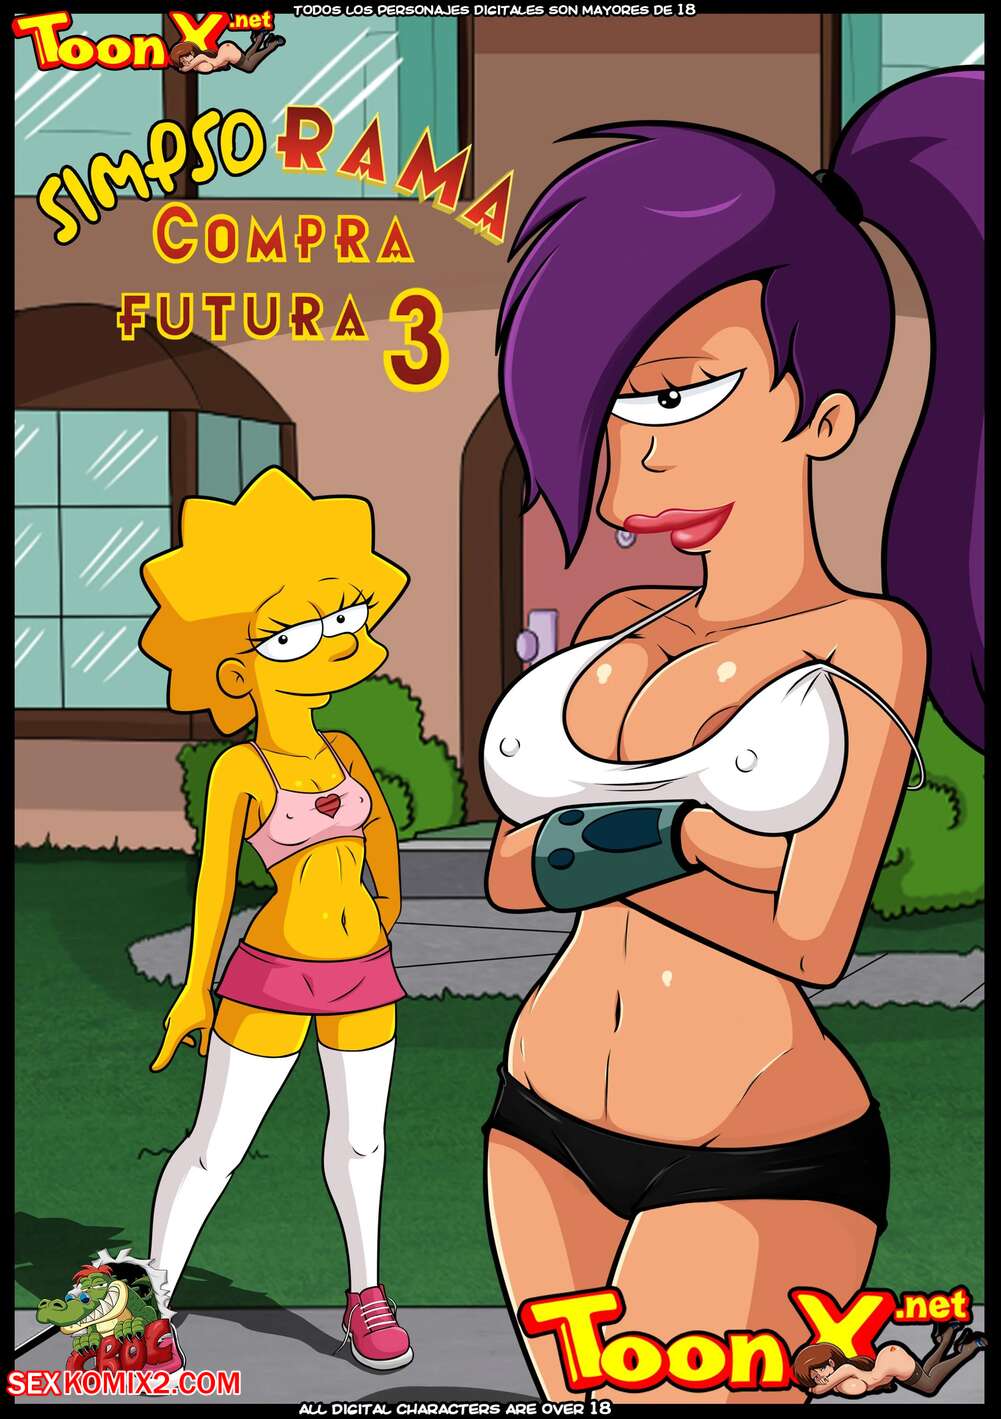 Nude Futurama Sex - âœ…ï¸ Porn comic SimpsoRama. Chapter 3. The Simpsons , Futurama. Croc. Sex  comic beauty woke up | Porn comics in English for adults only |  sexkomix2.com